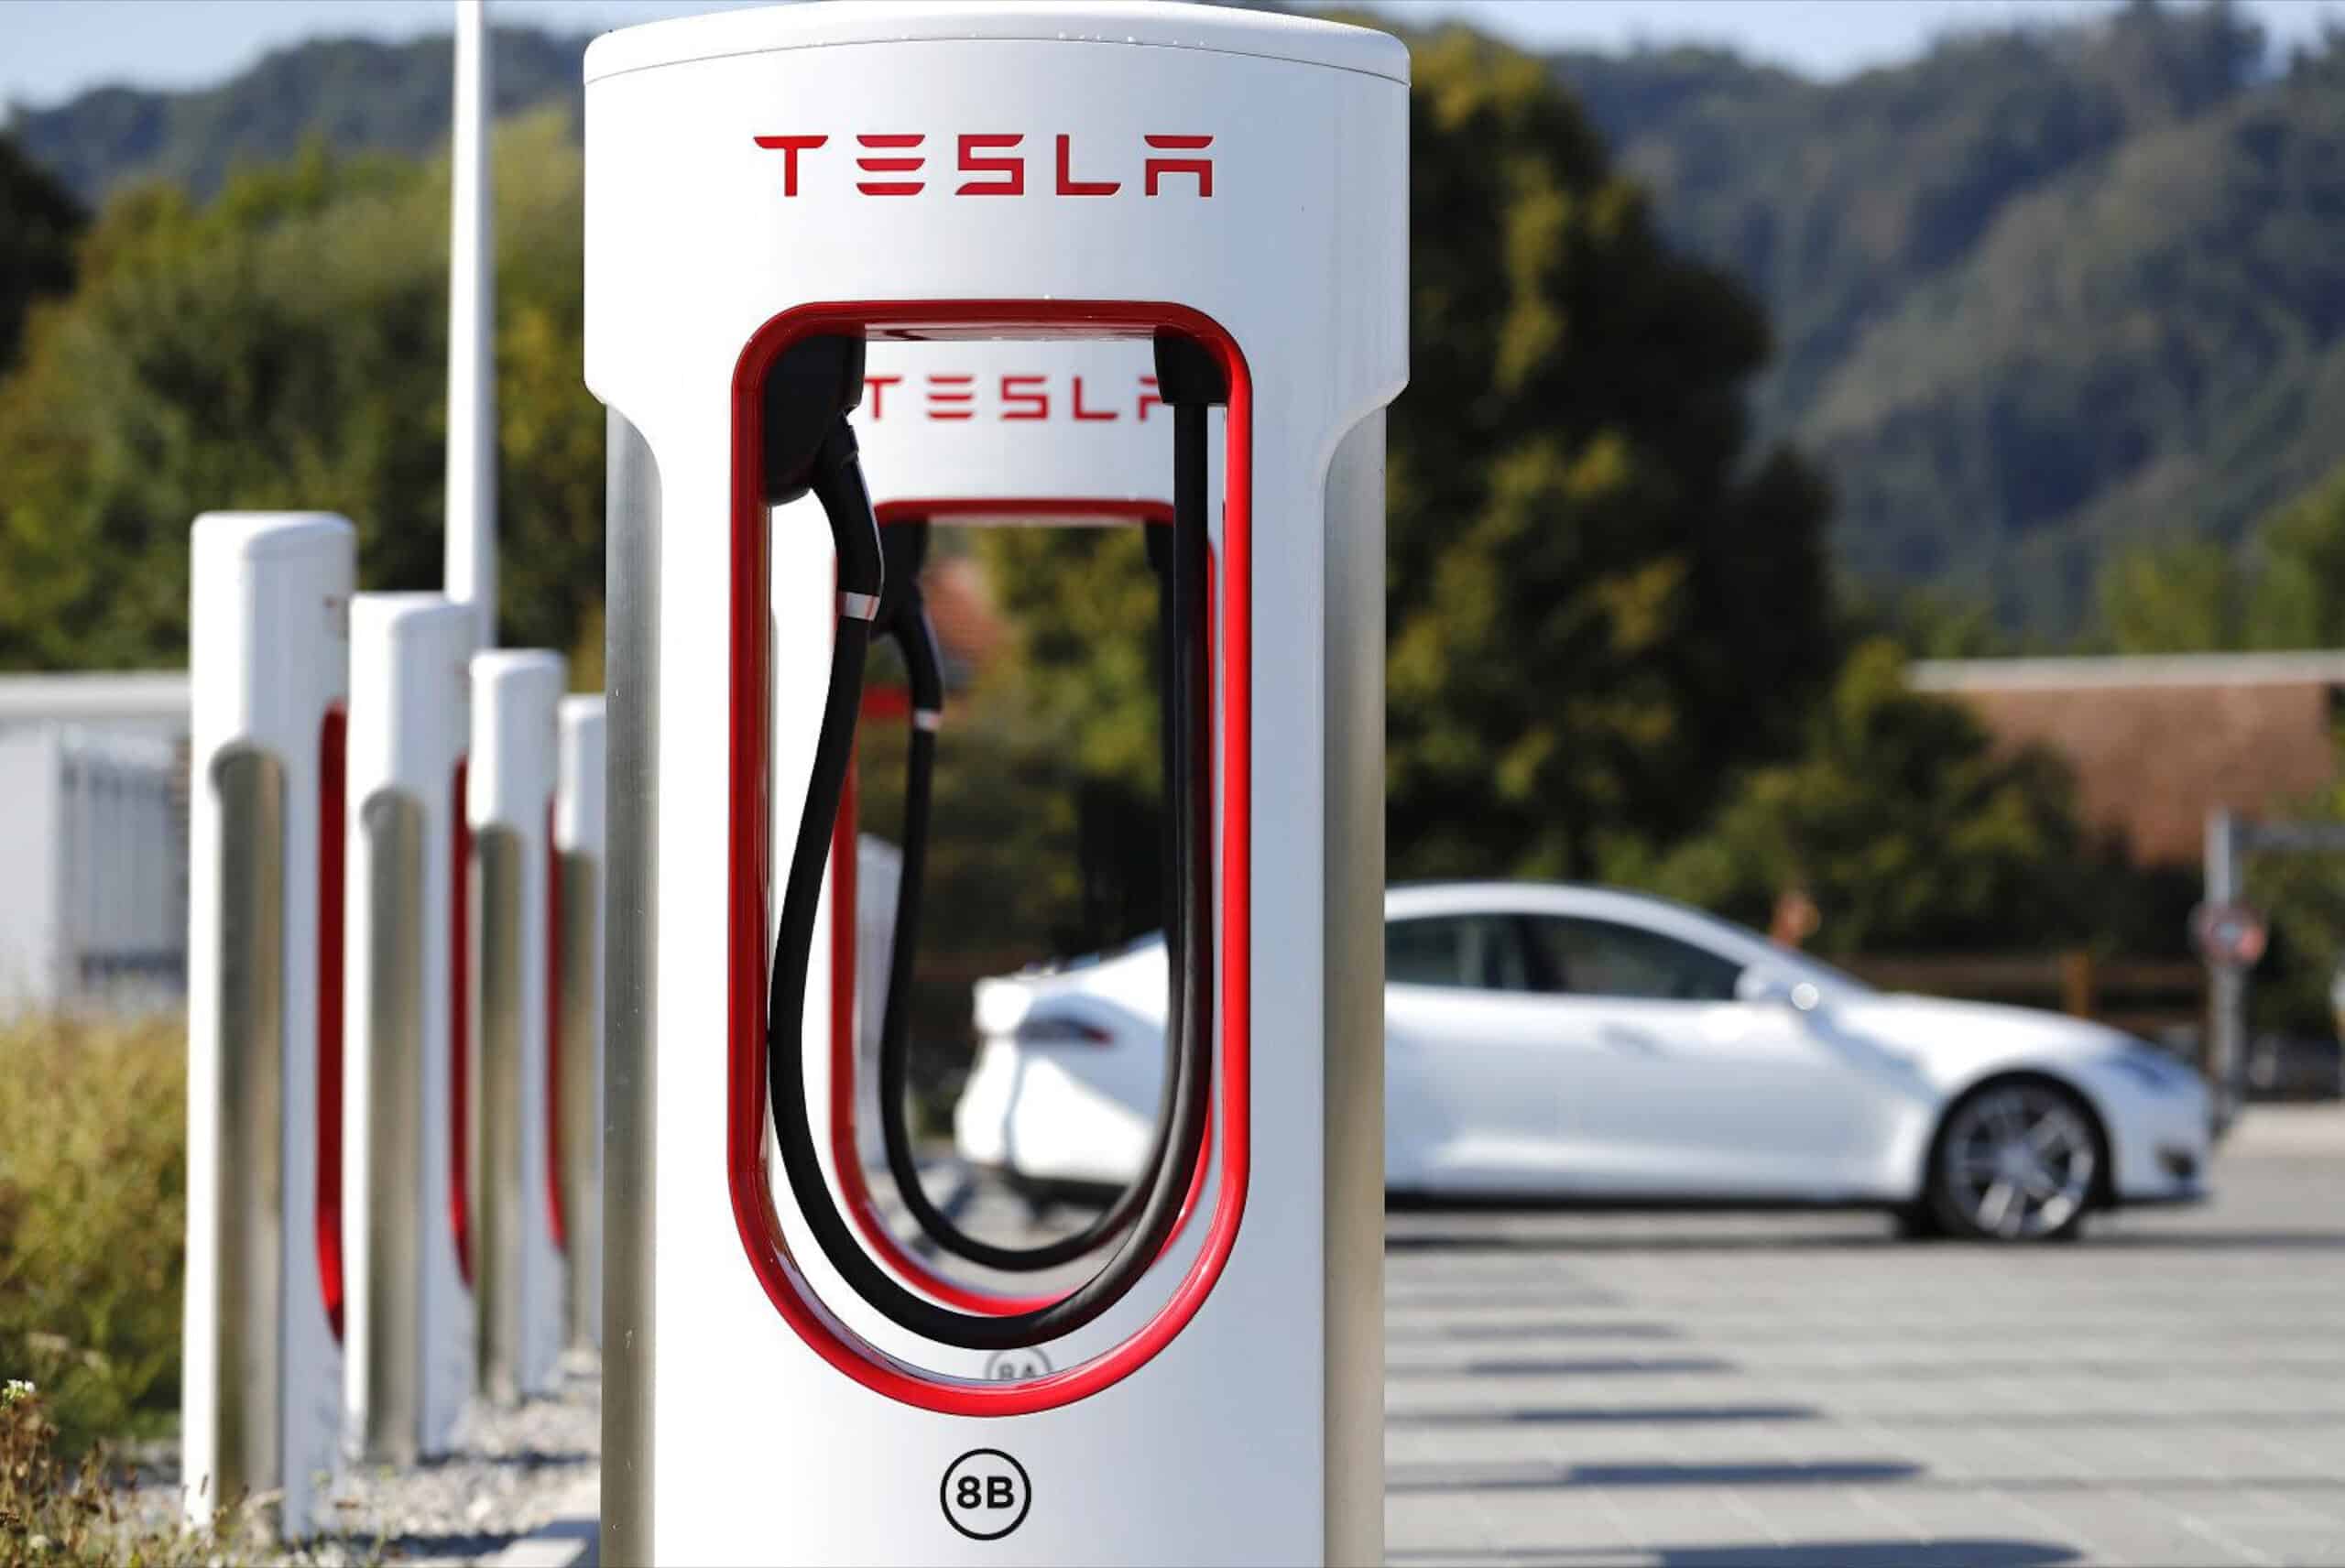 A Tesla Supercharger site